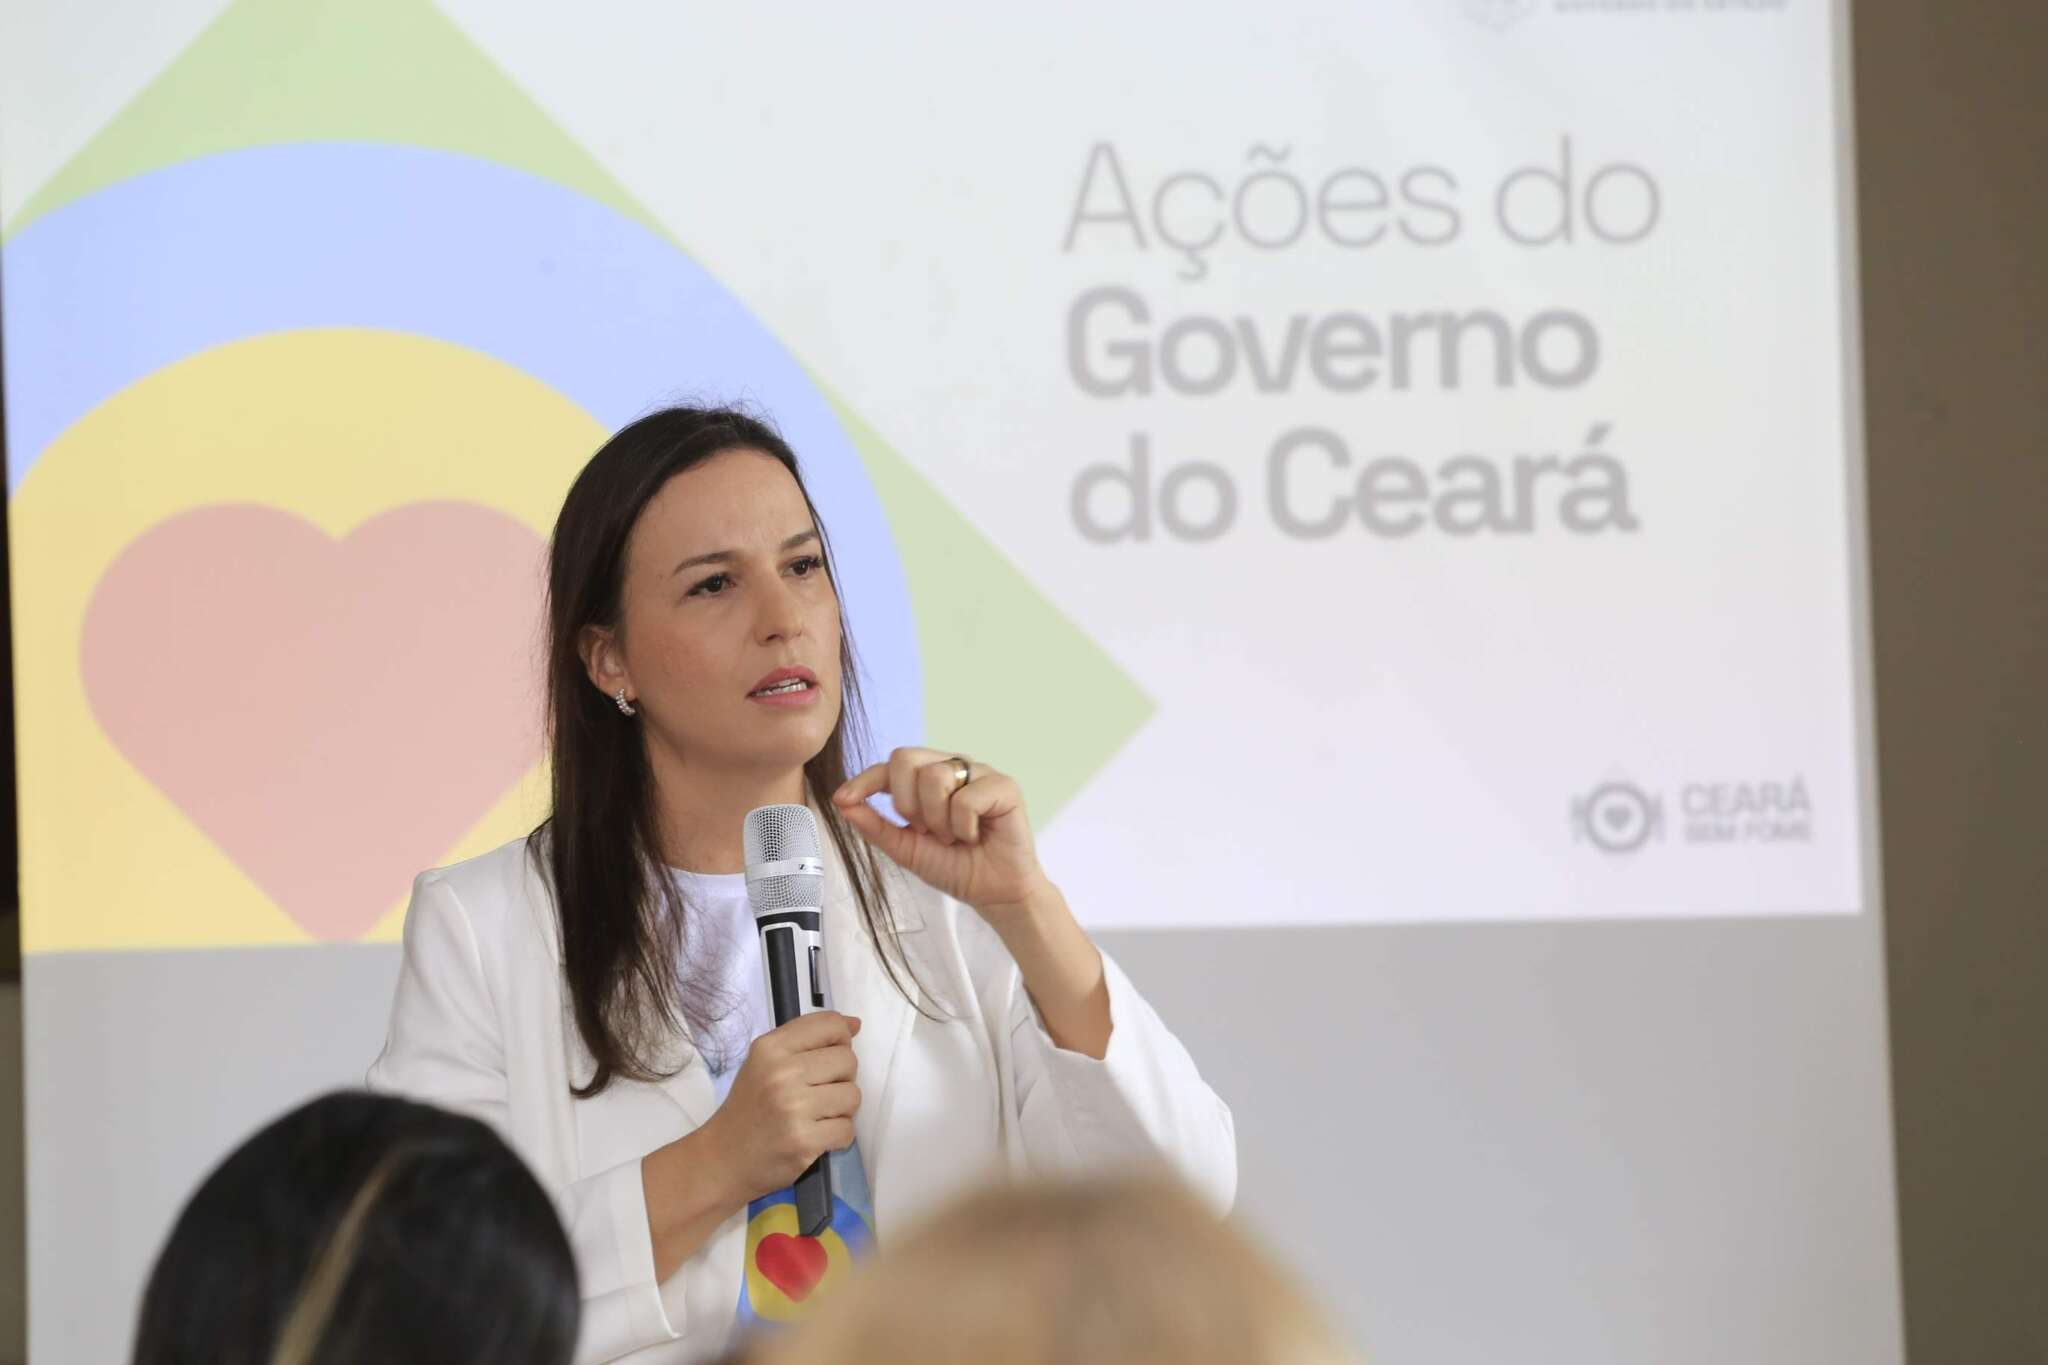 Ceará sem Fome terá atuação ampliada e permitirá a contratação de restaurantes para distribuição gratuita de refeições